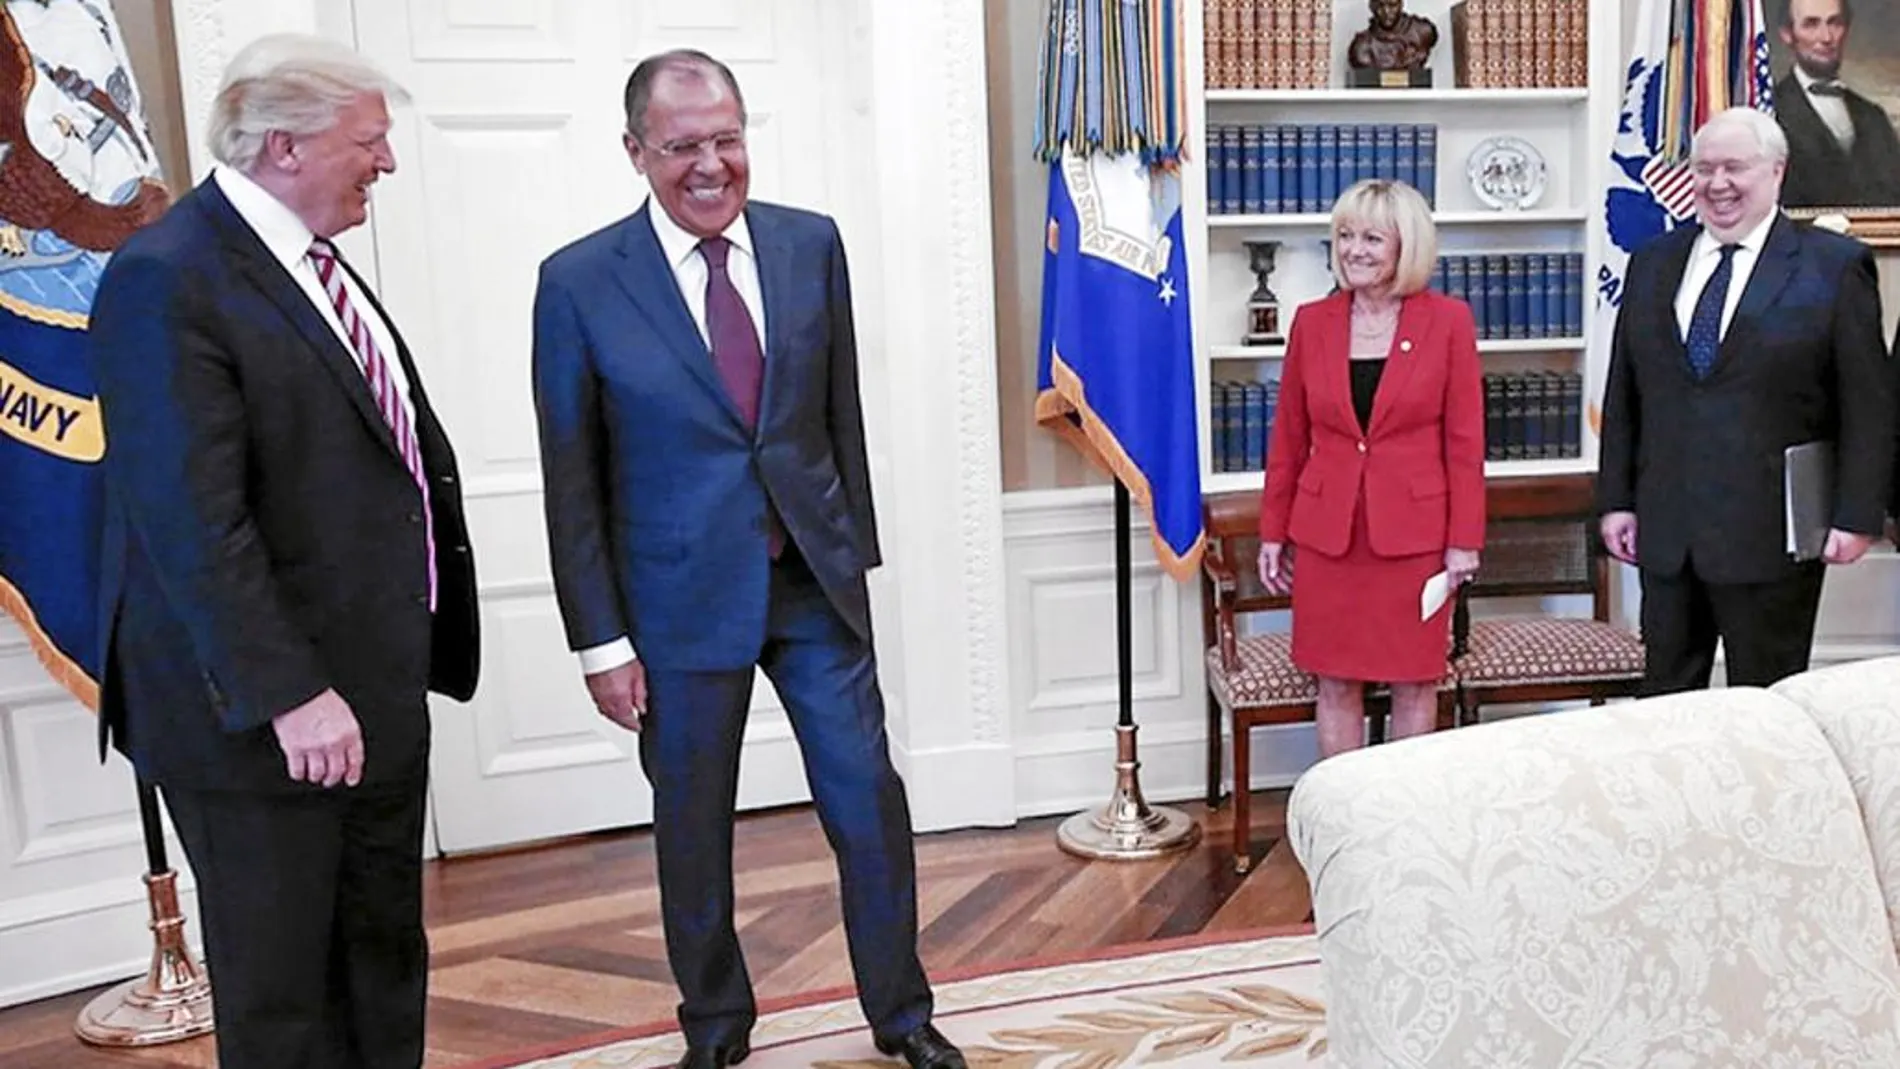 Trump recibió ayer en la Casa Blanca al ministro de Exteriores ruso, Sergei Lavrov, quien fue acompañado del polémico embajador ruso Sergey Kislyak (a la derecha), implicado en varios casos de espionaje.